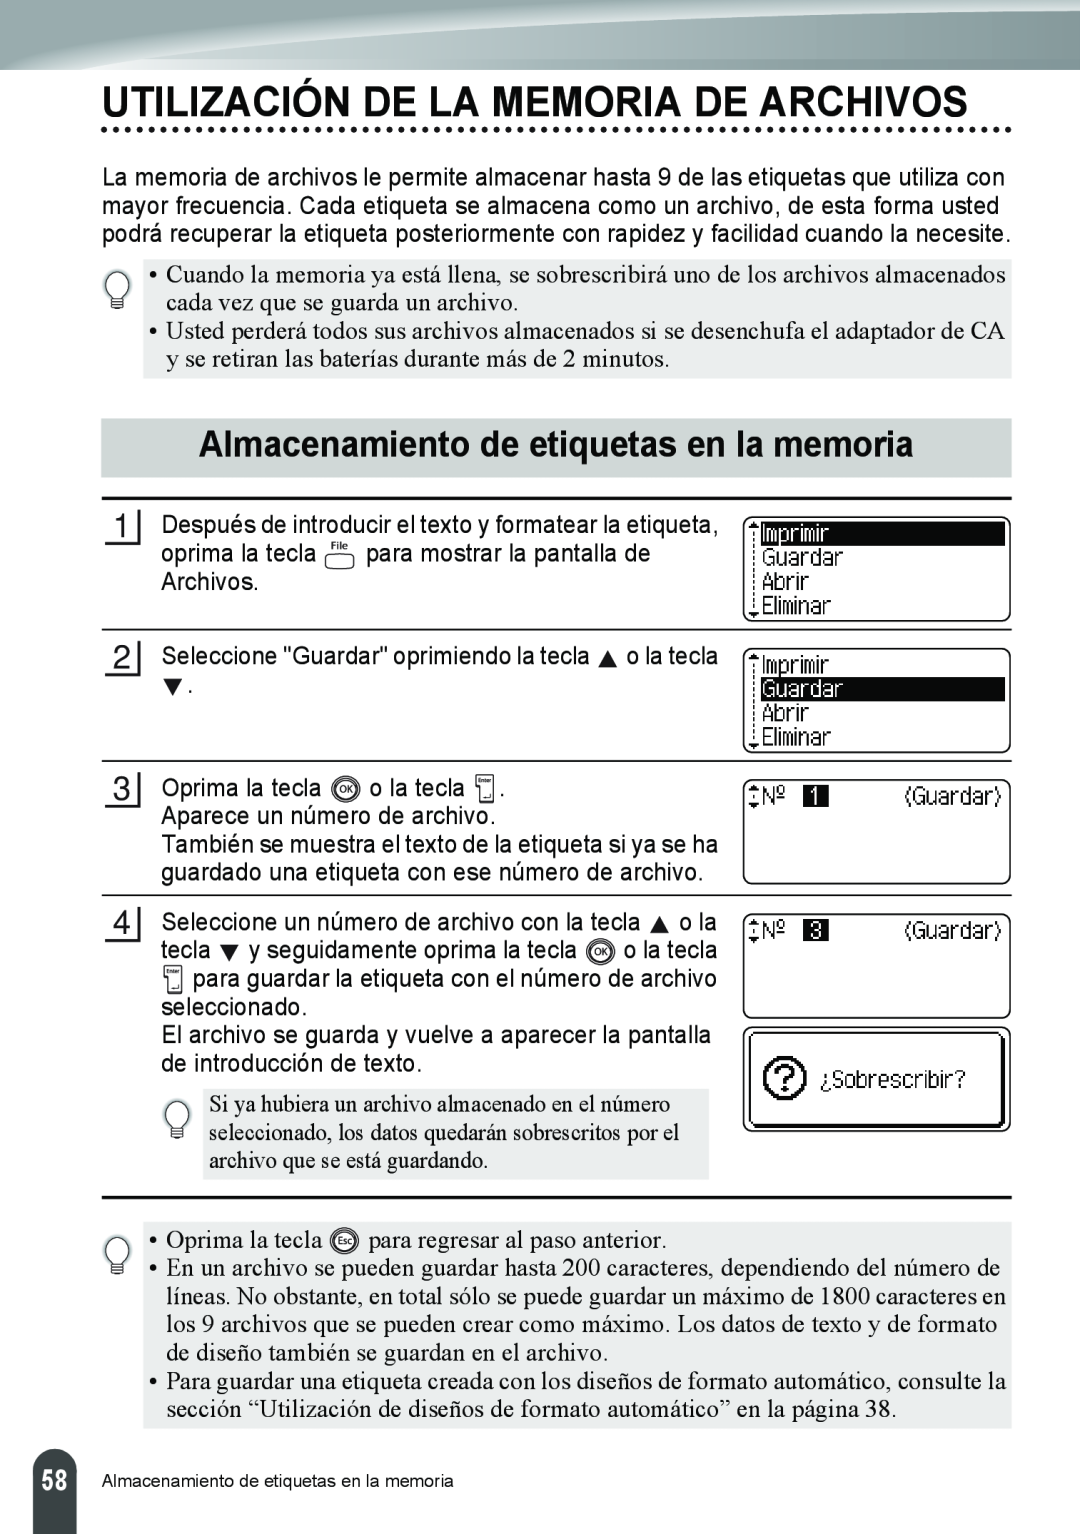 Brother PT-2110, PT-2100 manual Utilización De La Memoria De Archivos, Almacenamiento de etiquetas en la memoria 